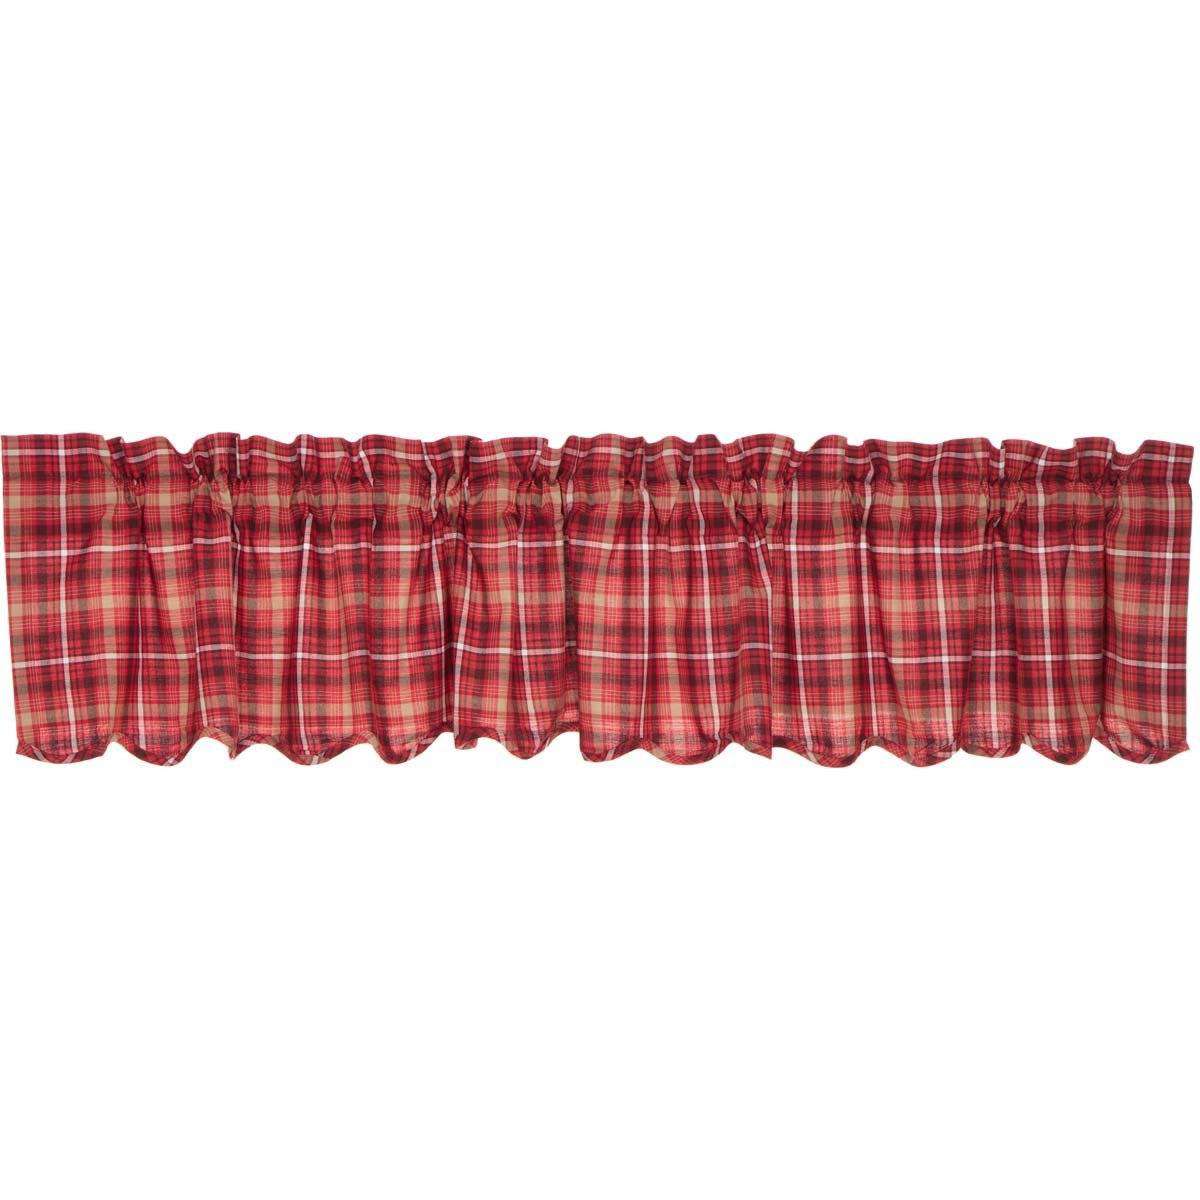 Braxton Scalloped Valance Curtain Apple Red, Natural, Ebony - The Fox Decor